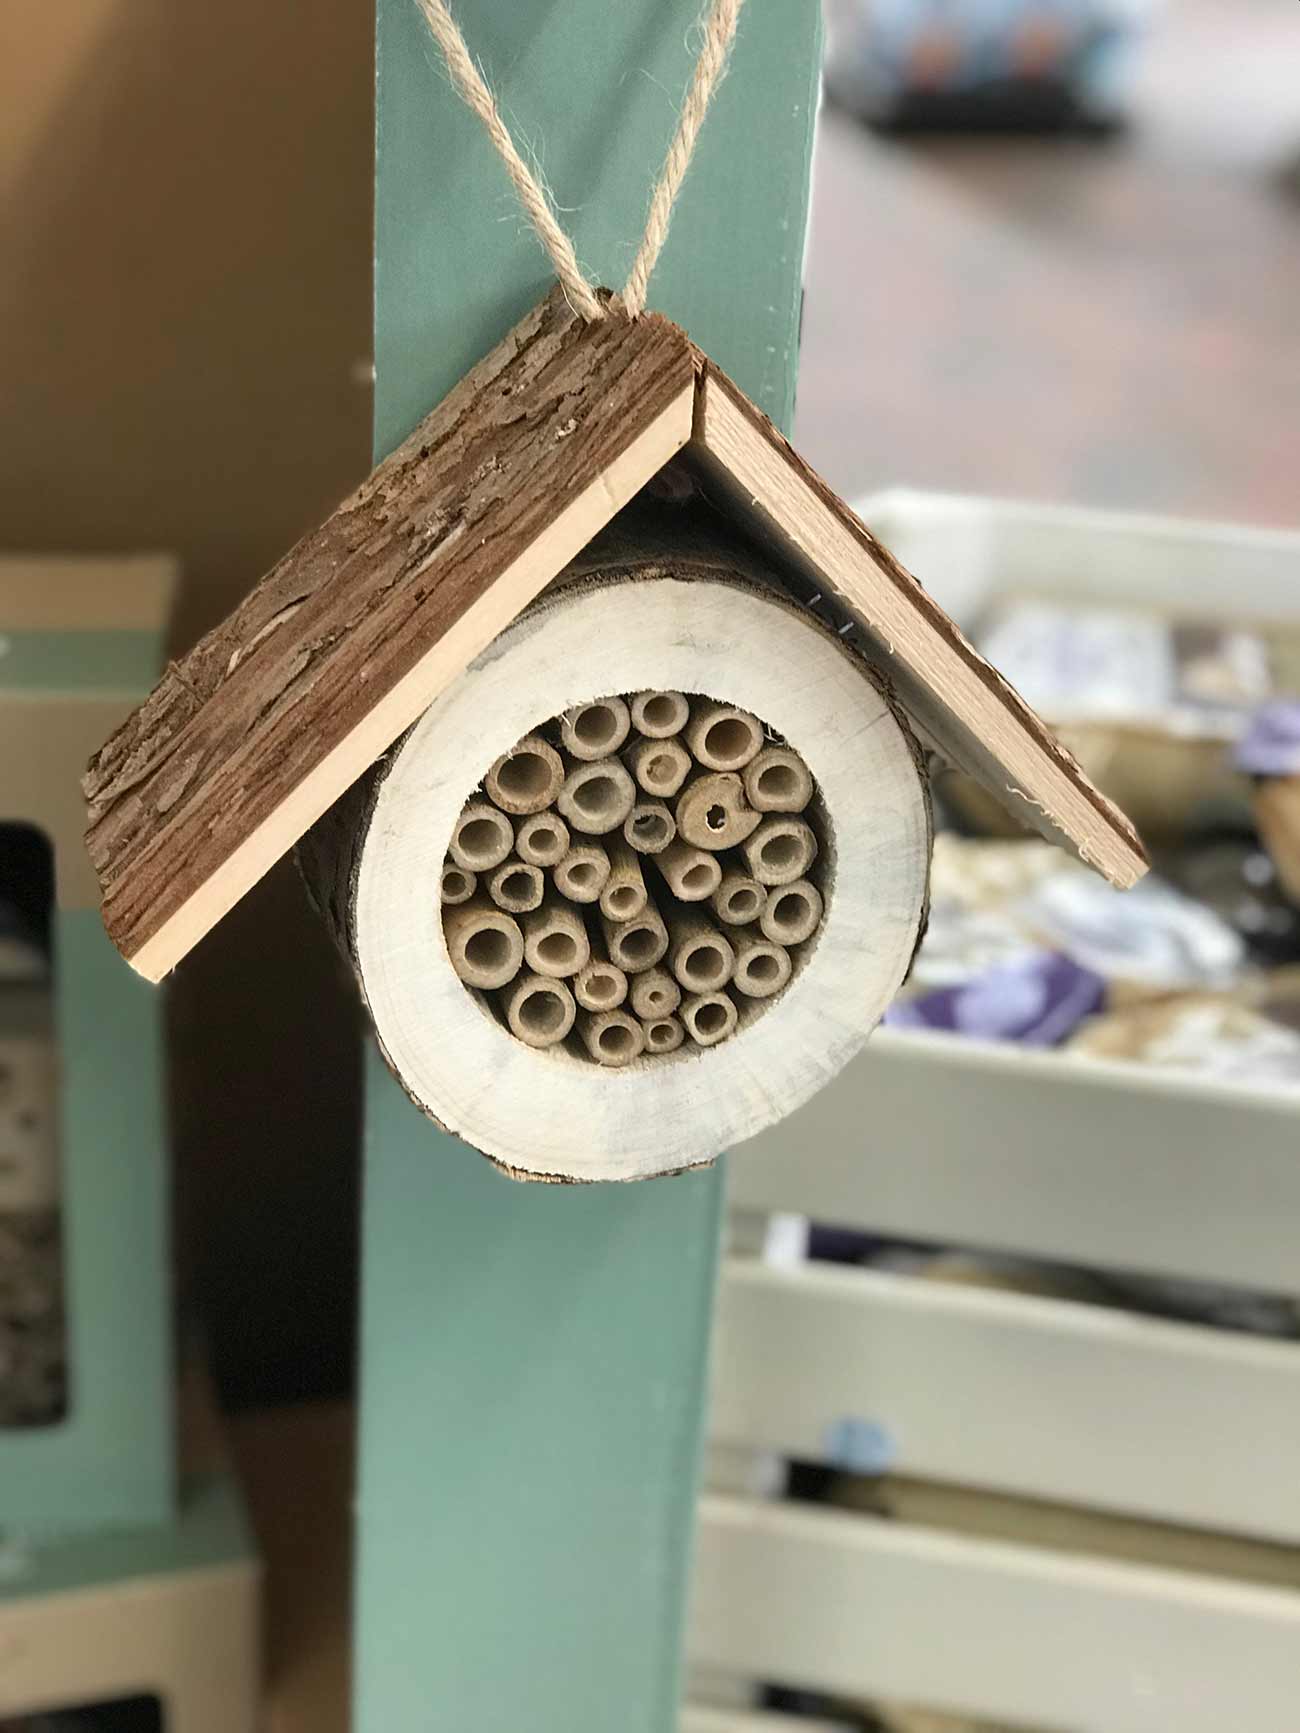 Bee House at Burston Garden Centre